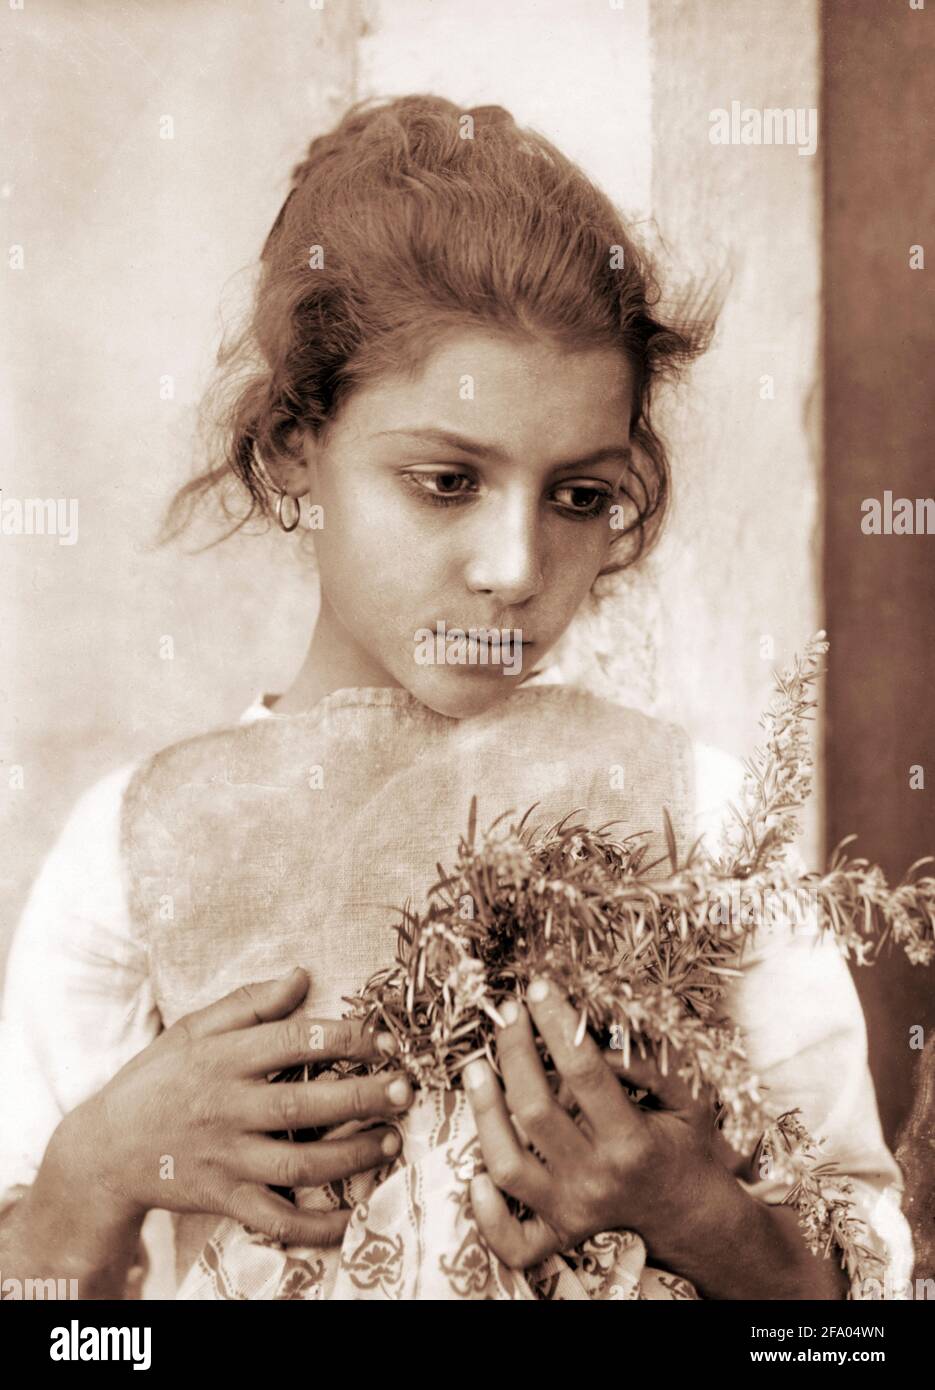 Wilhelm von Gloeden. Girl with Rosemary by the German photographer, Wilhelm Iwan Friederich August Freiherr von Gloeden (1856-1931), 1905-14 Stock Photo